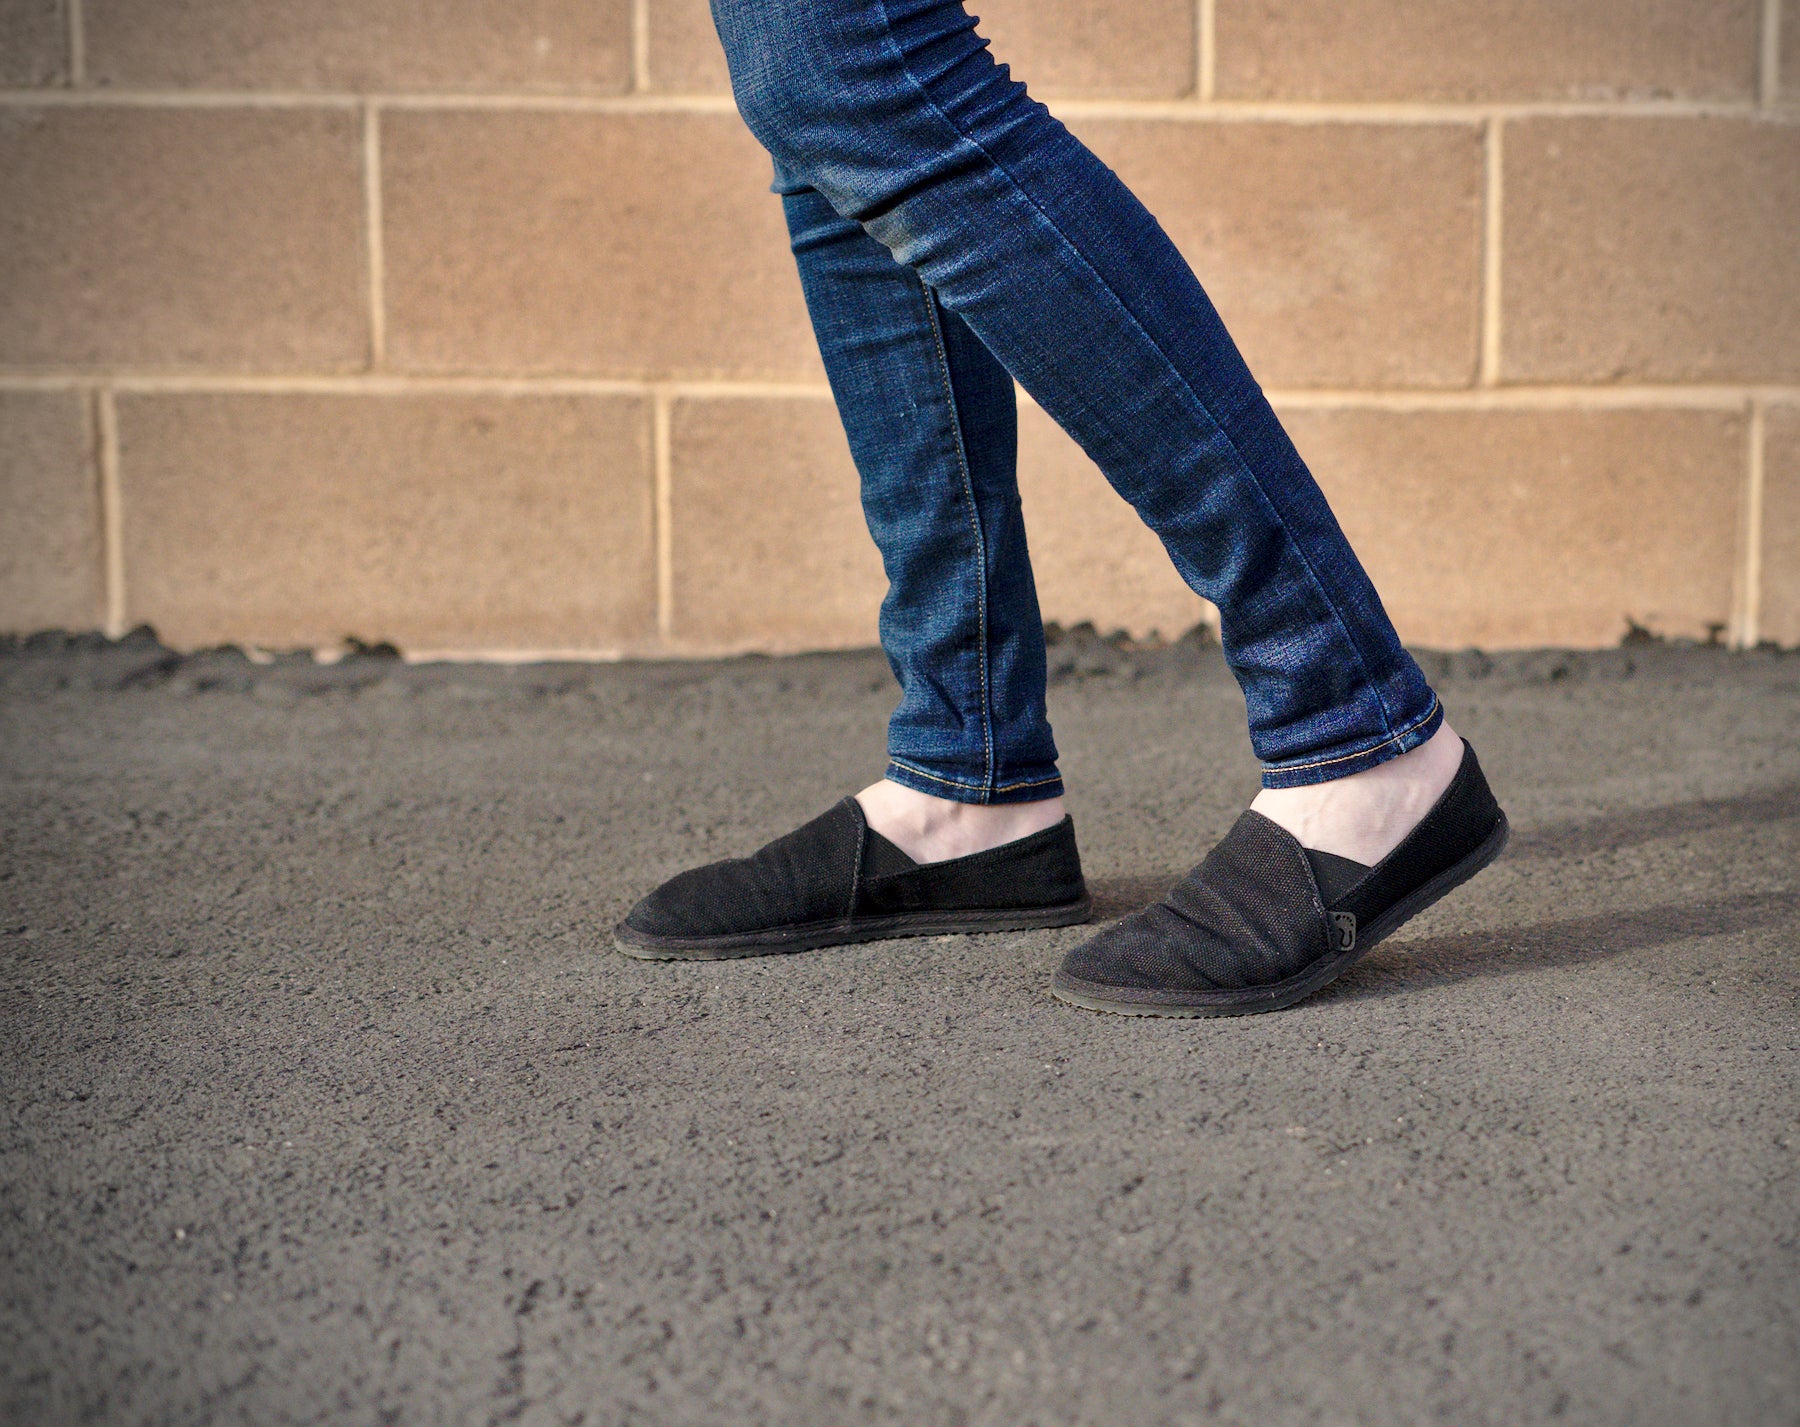 Terra Black – Unshoes Minimal Footwear